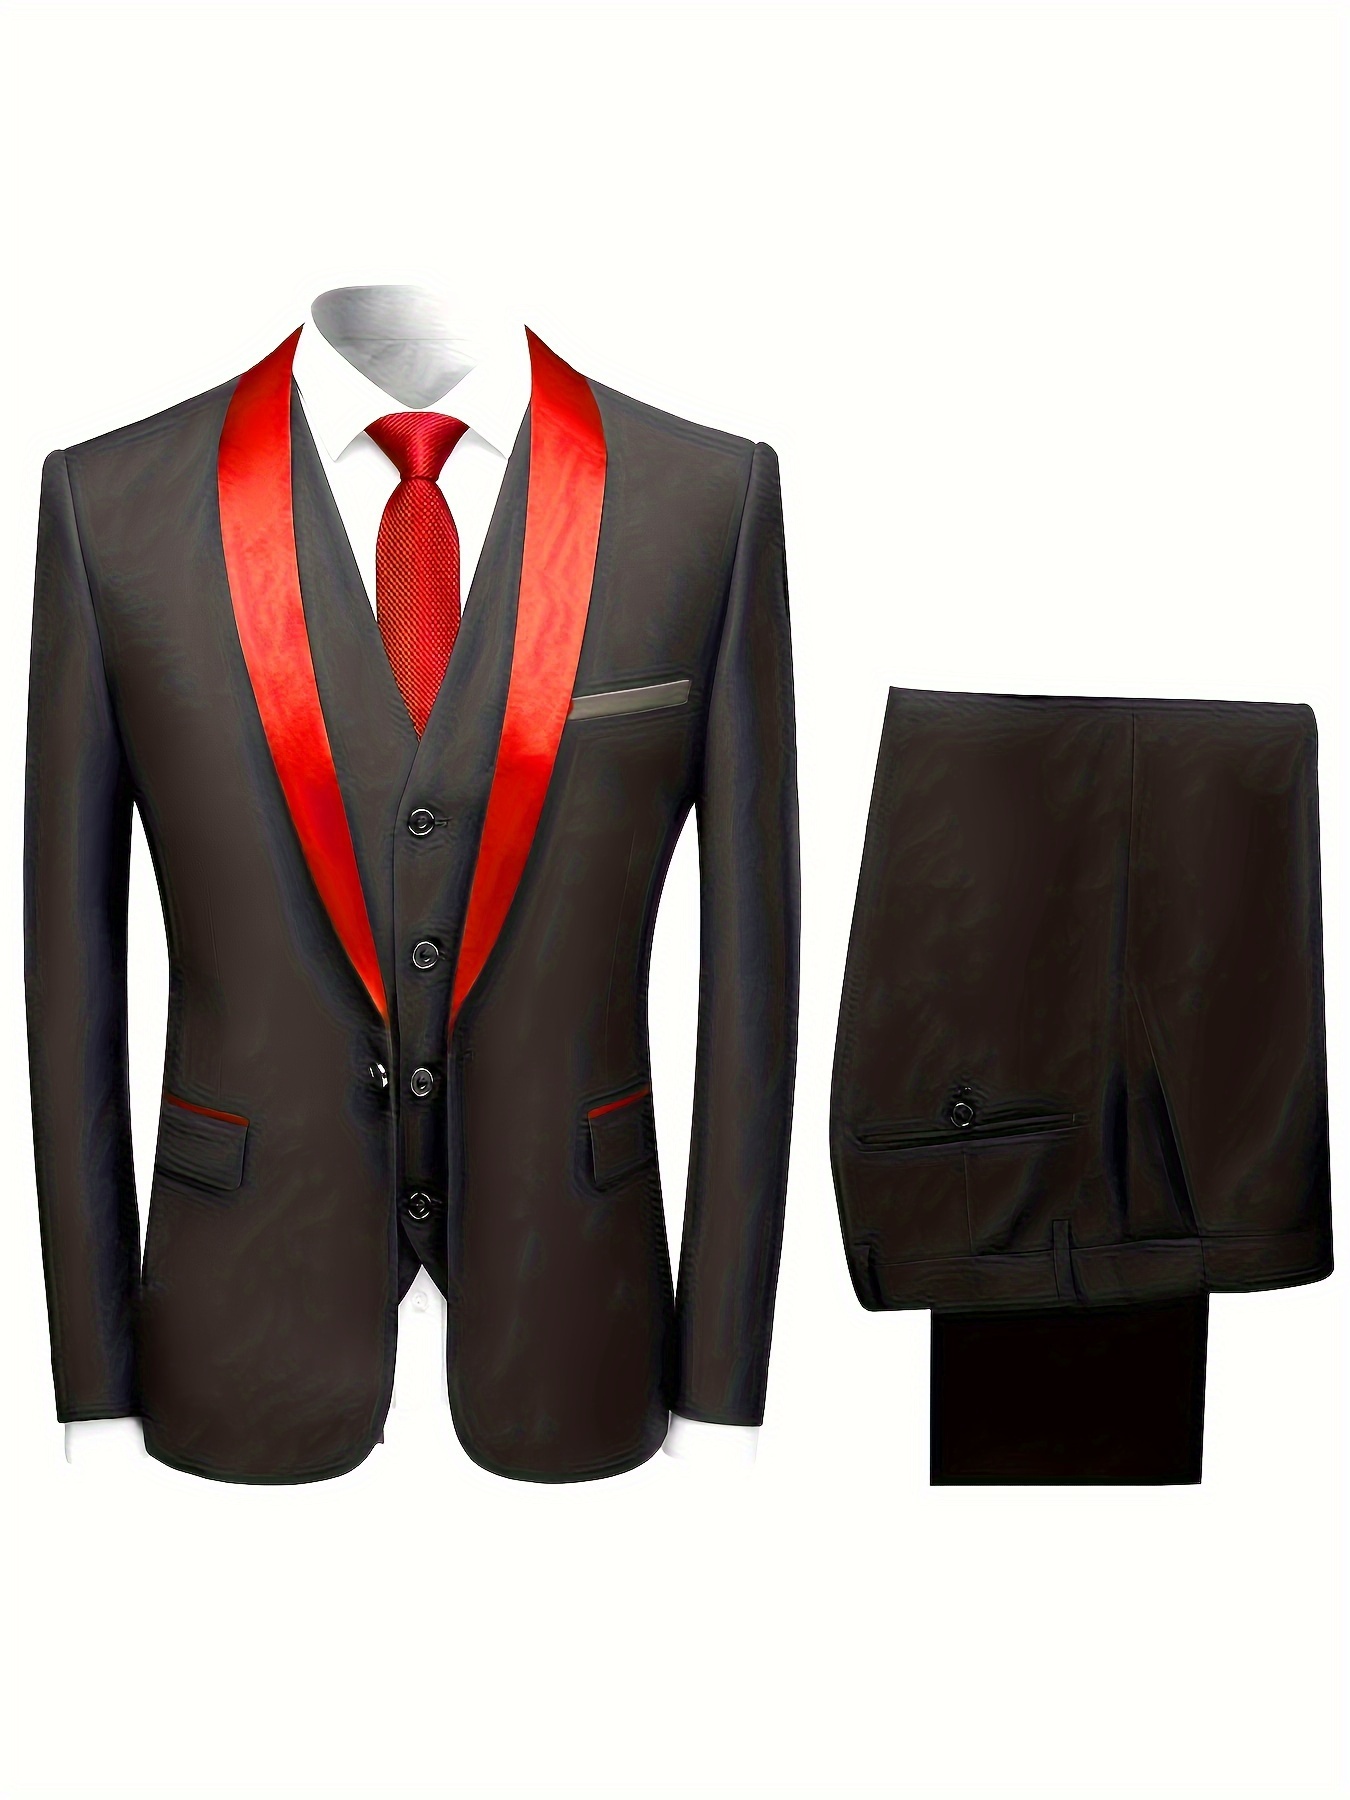 Blazer for Men,Men's 3 Piece Slim Fit Suit Set 2 Button Blazer Jacket Vest  Pants Solid Wedding Dress Tux and Trousers